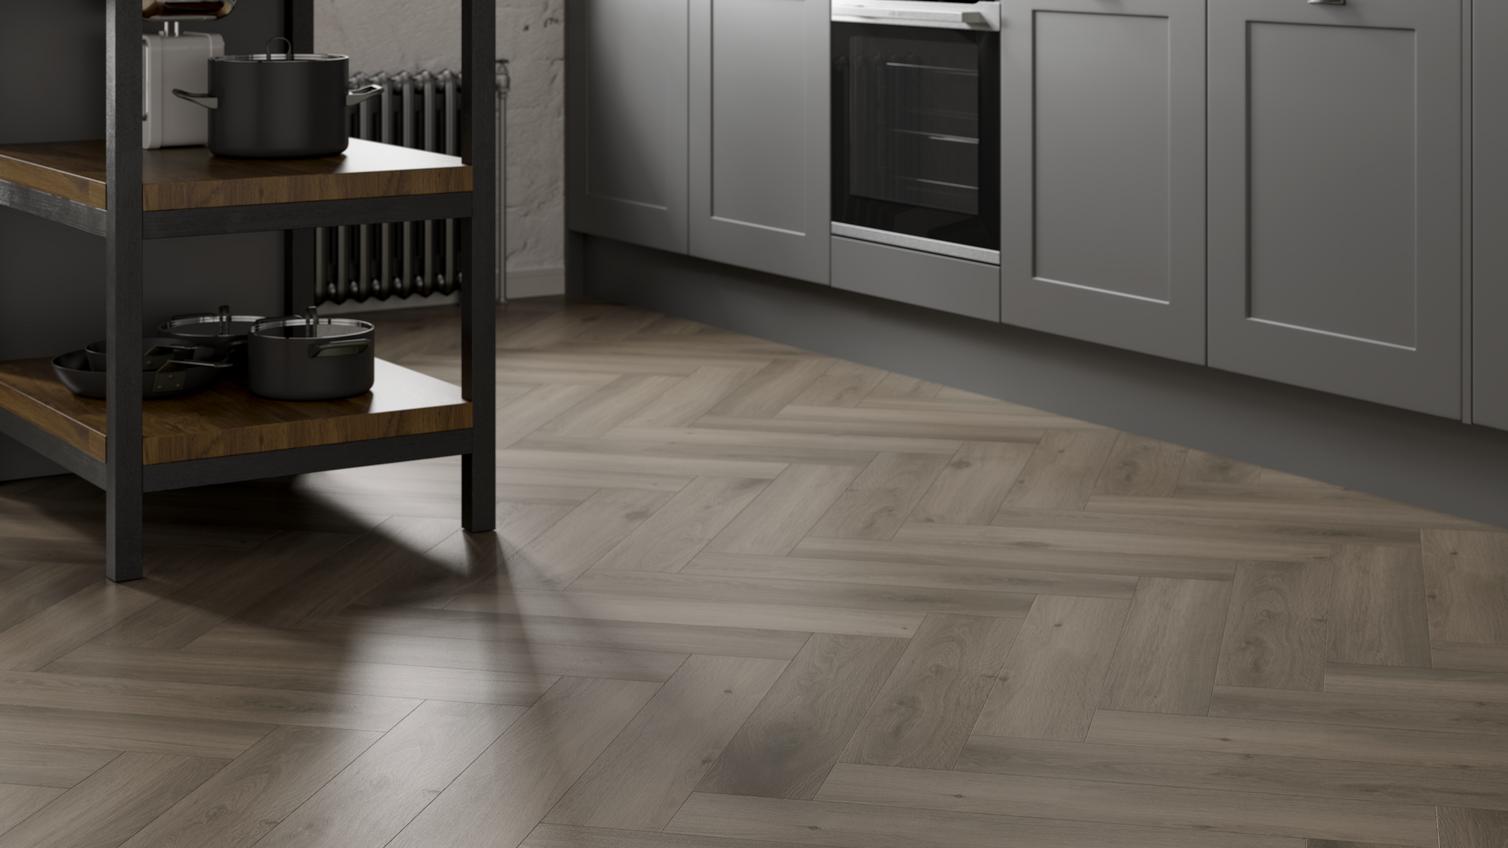 Howdens Herringbone Warm Oak Laminate Flooring 1.238 m² Pack Featuring Chelford Slate Grey